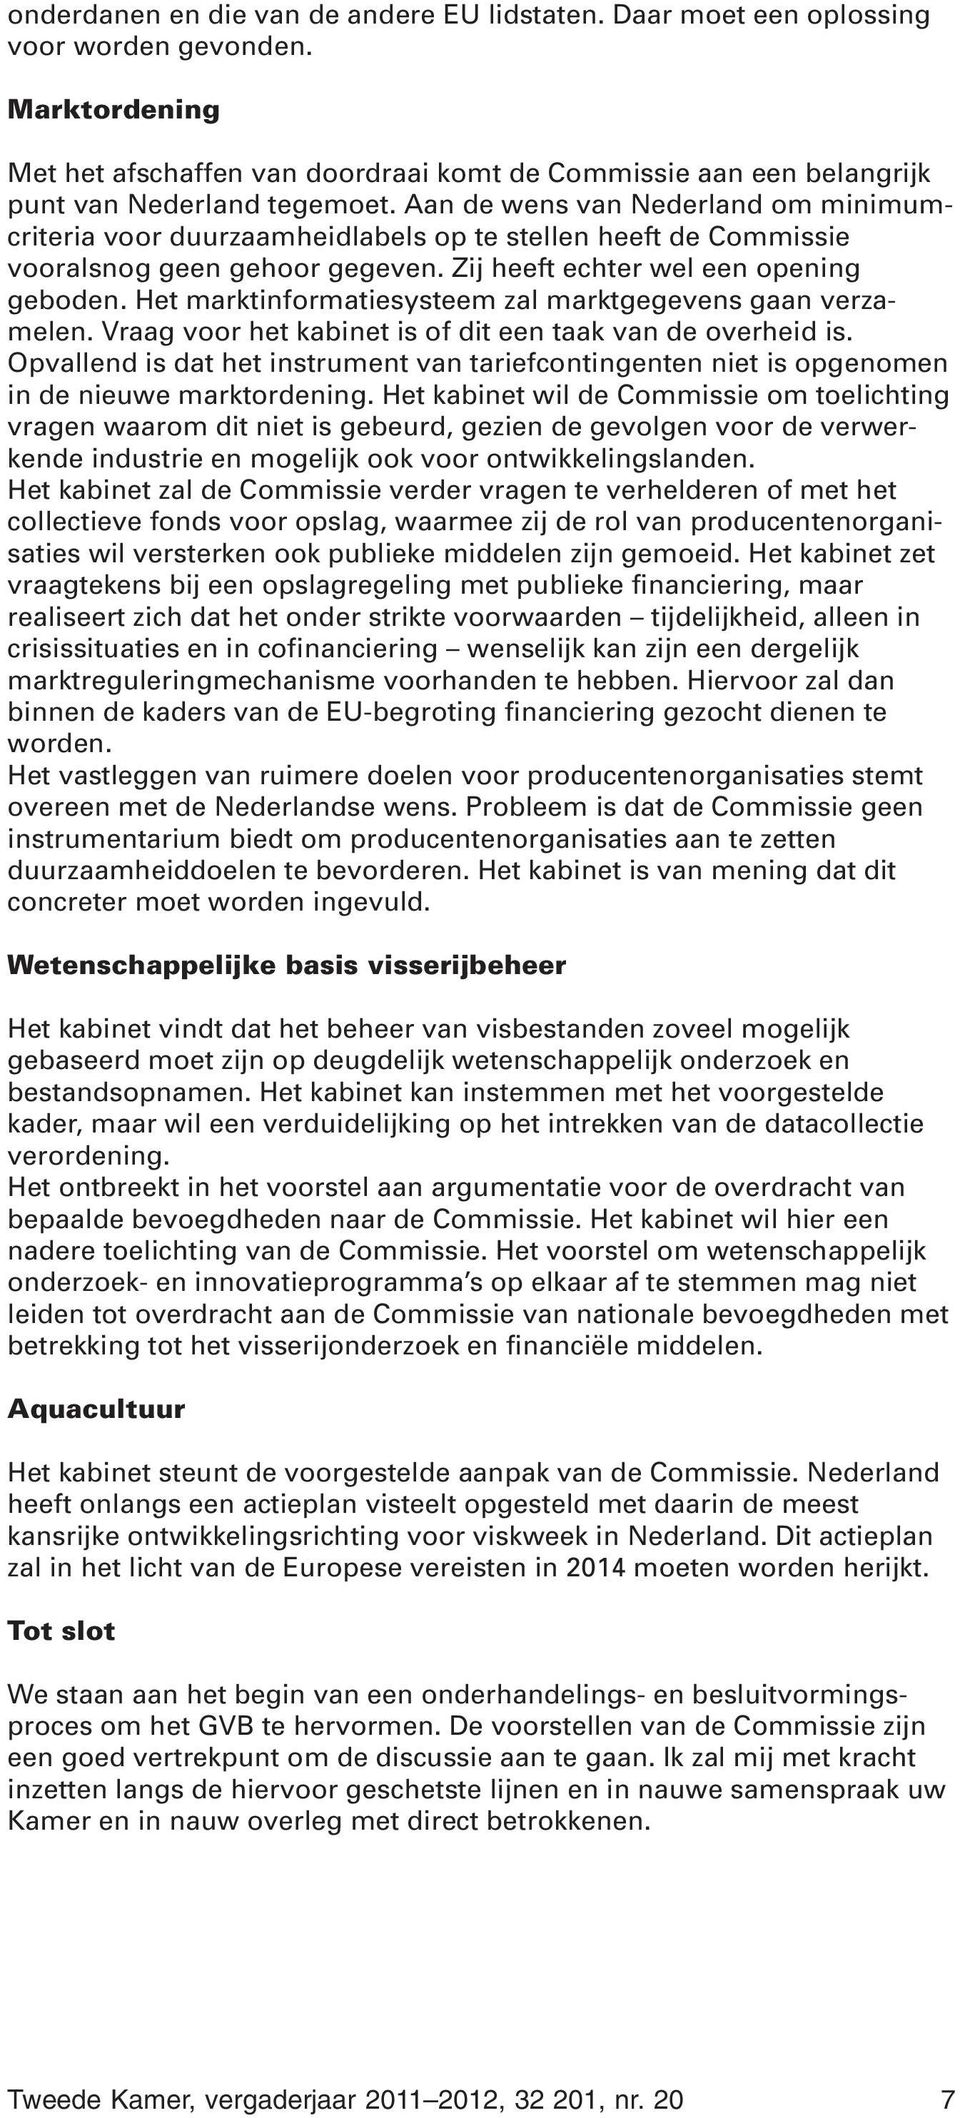 Aan de wens van Nederland om minimumcriteria voor duurzaamheidlabels op te stellen heeft de Commissie vooralsnog geen gehoor gegeven. Zij heeft echter wel een opening geboden.